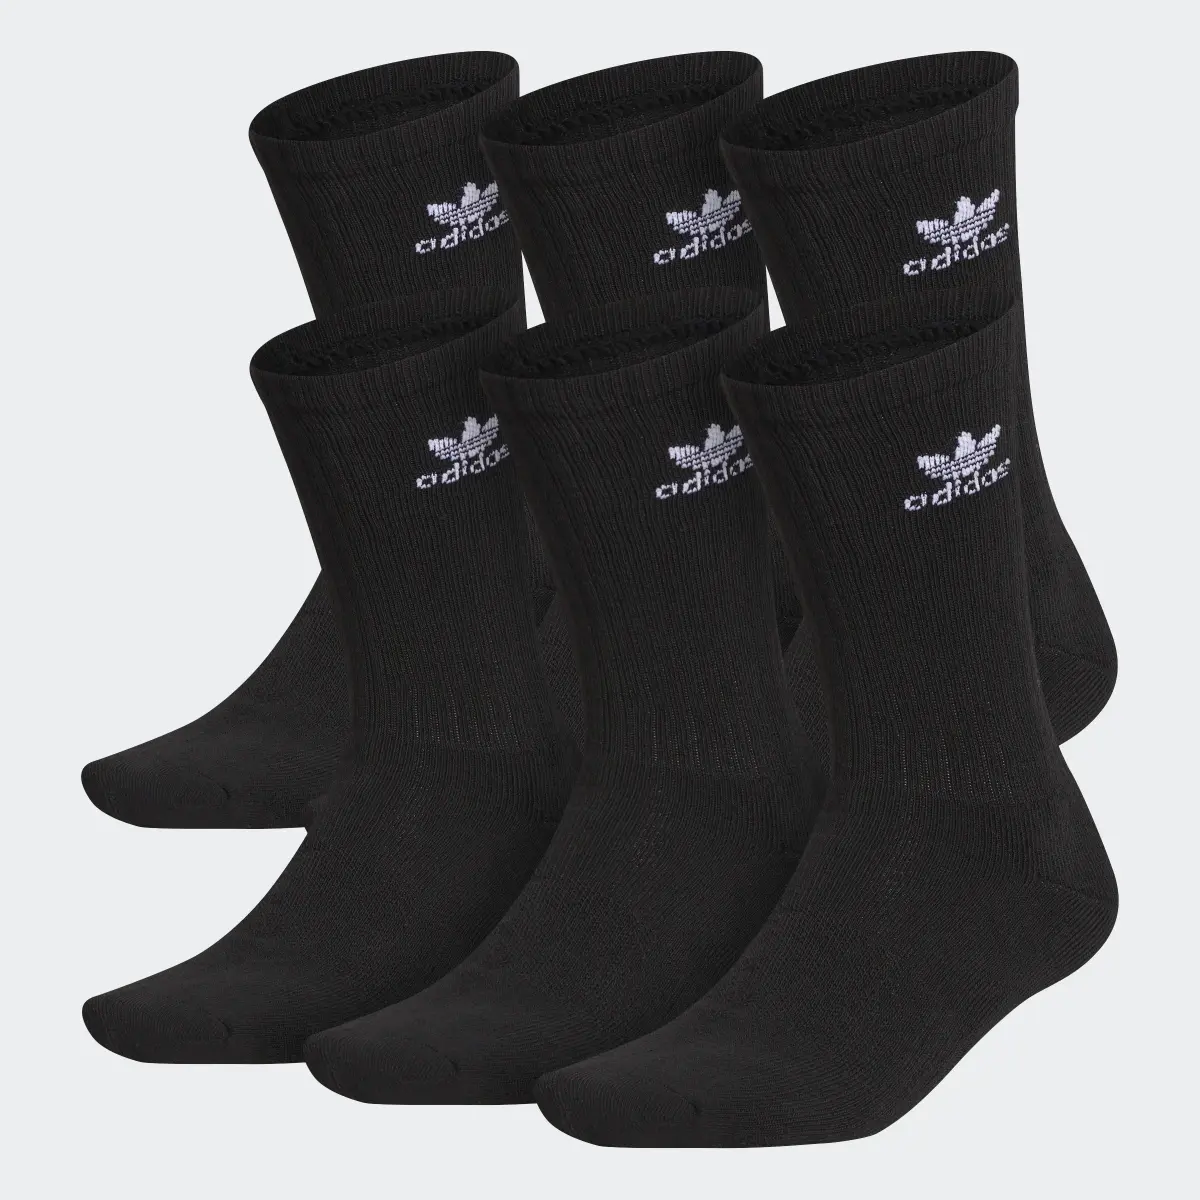 Adidas Trefoil Crew Socks 6 Pairs. 1